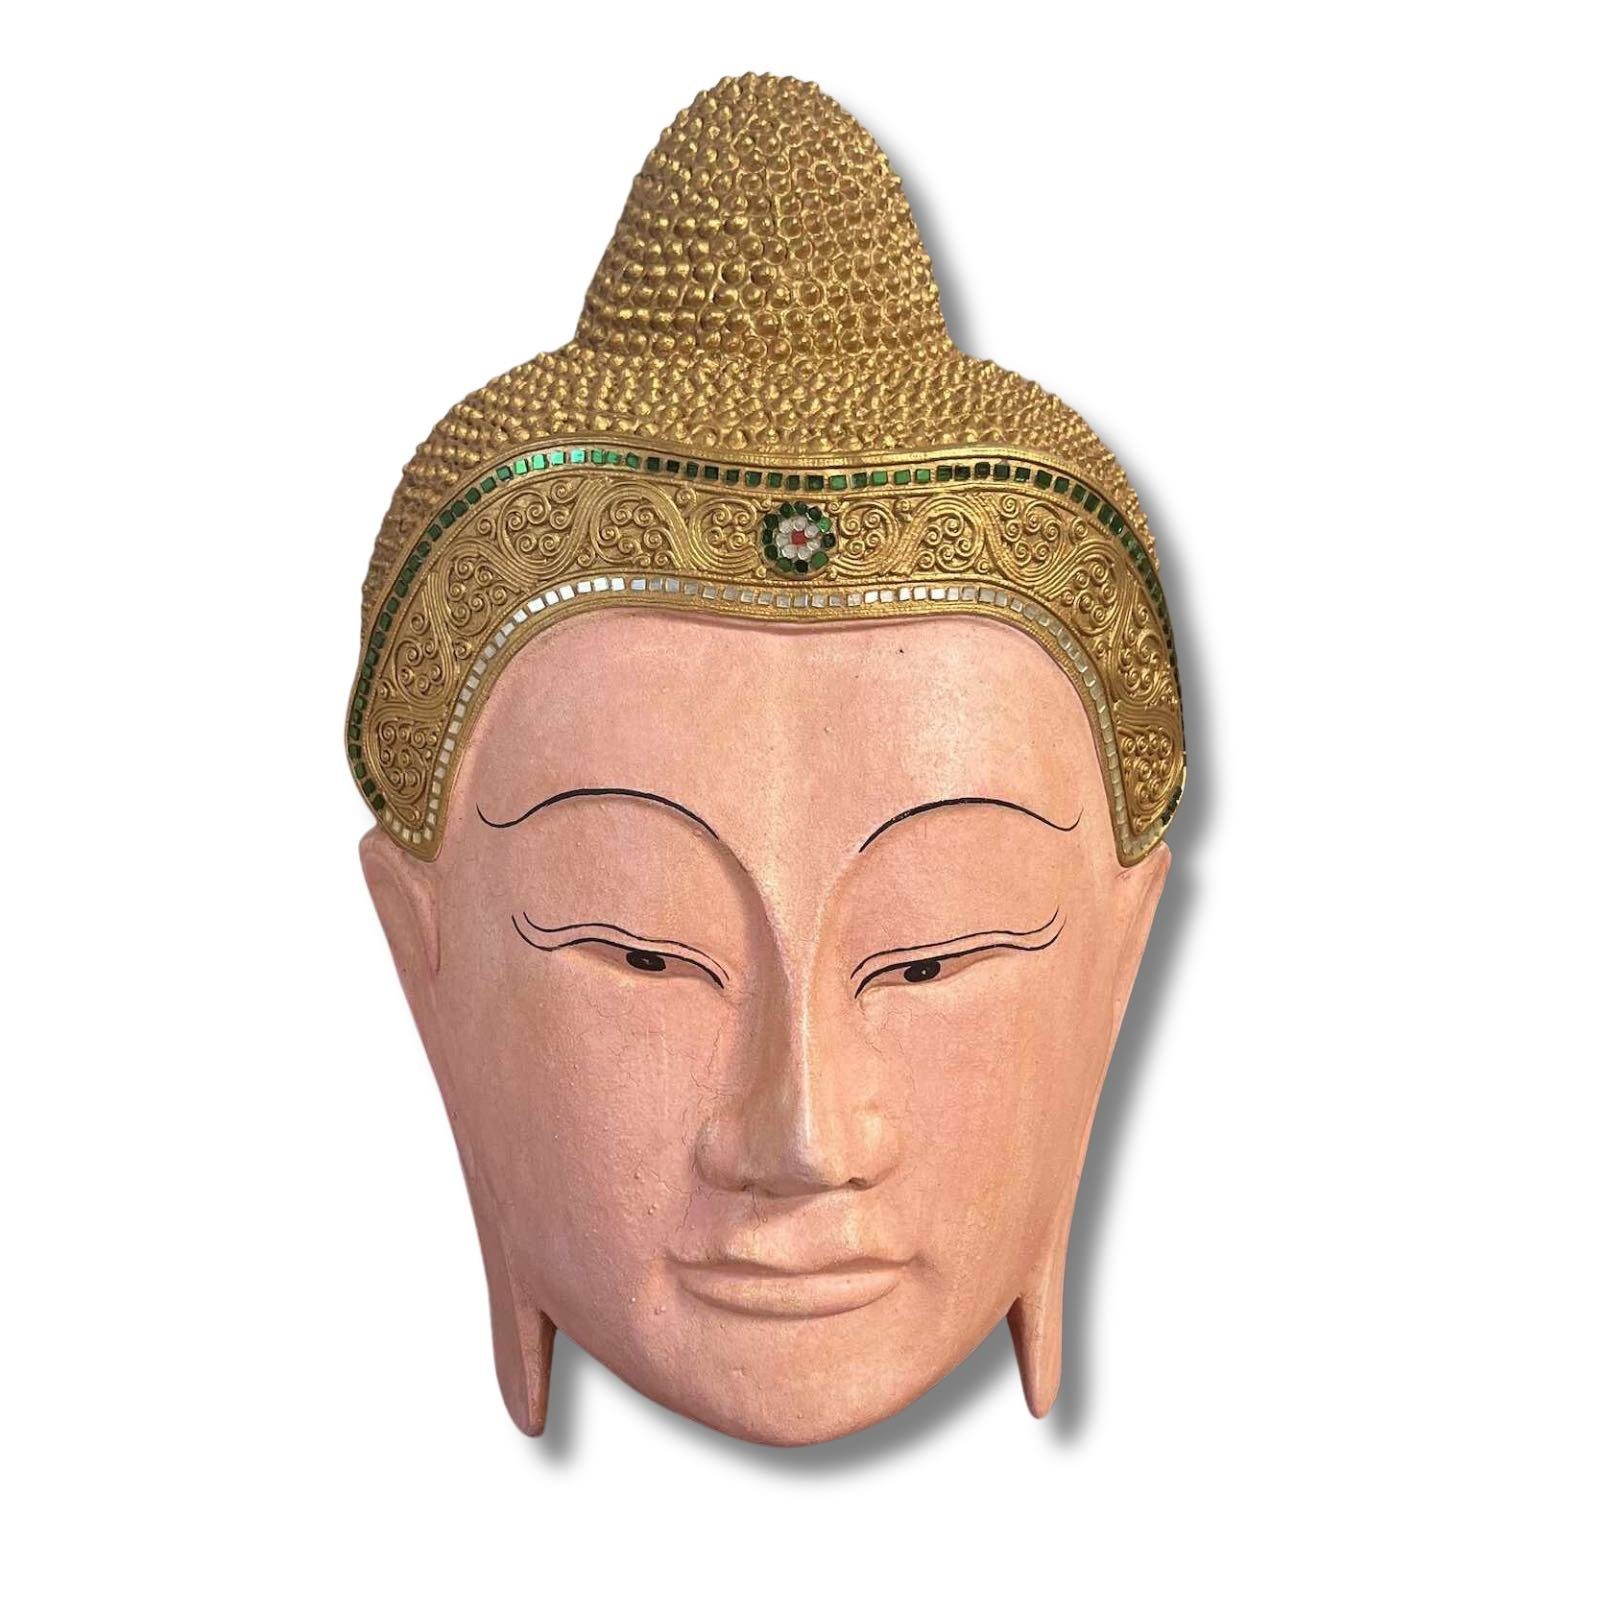 Asien LifeStyle Buddhafigur Buddha Kopf Maske Holz Skulptur Thailand 50cm groß